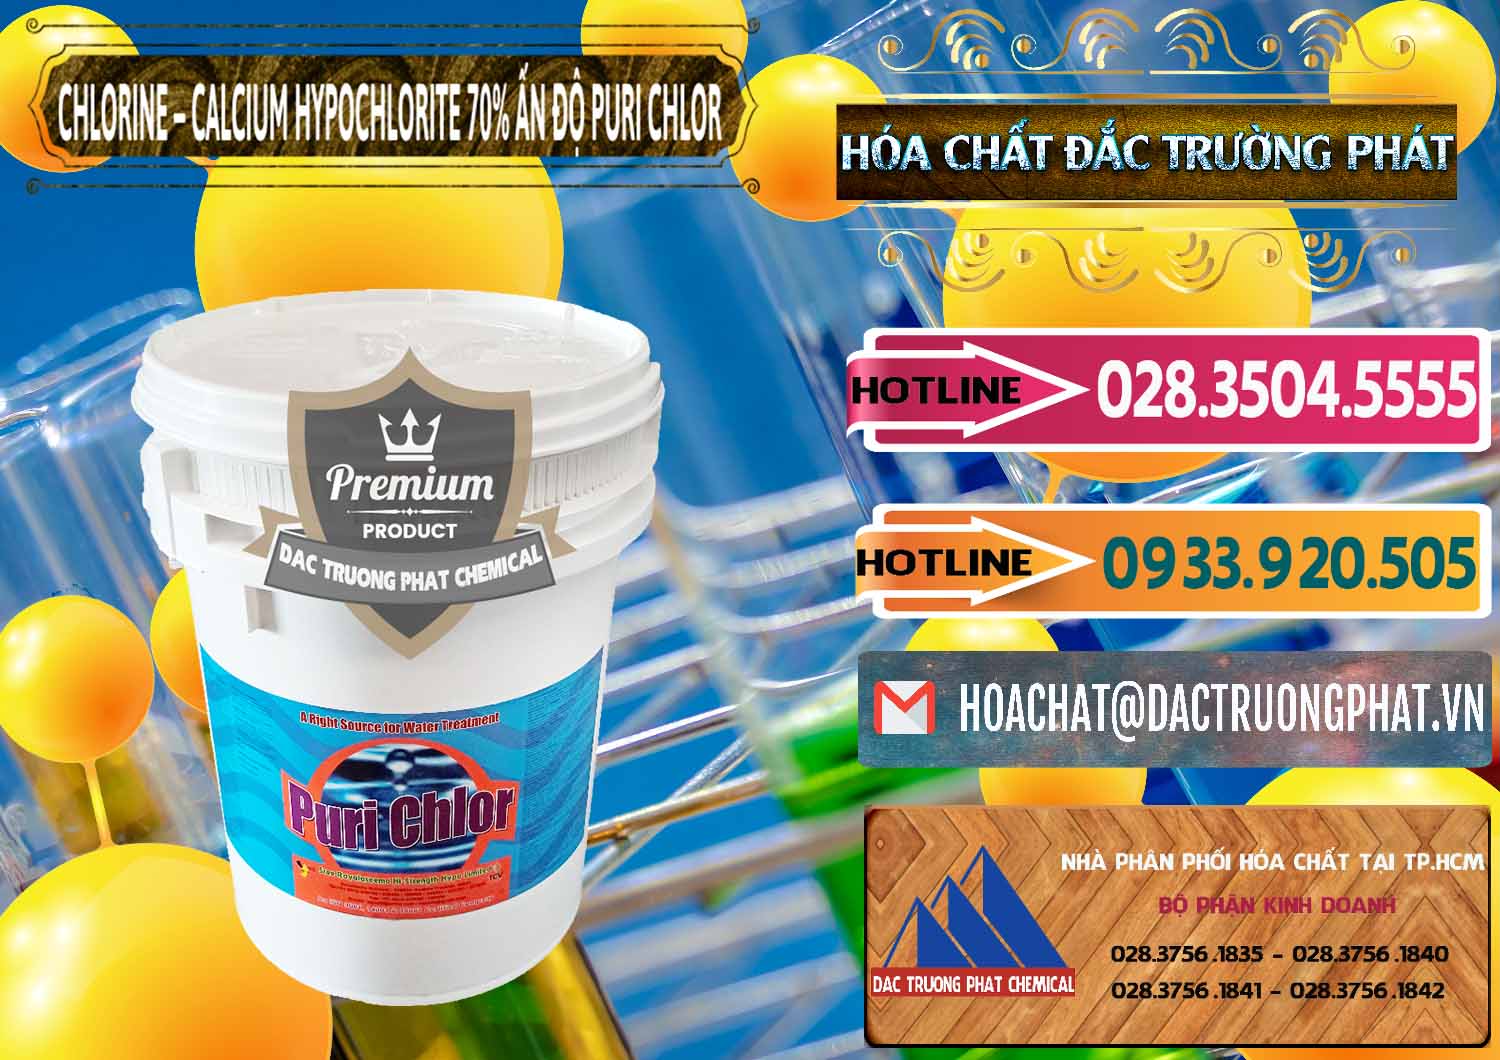 Chuyên bán & cung cấp Chlorine – Clorin 70% Puri Chlo Ấn Độ India - 0123 - Nơi phân phối ( bán ) hóa chất tại TP.HCM - dactruongphat.vn